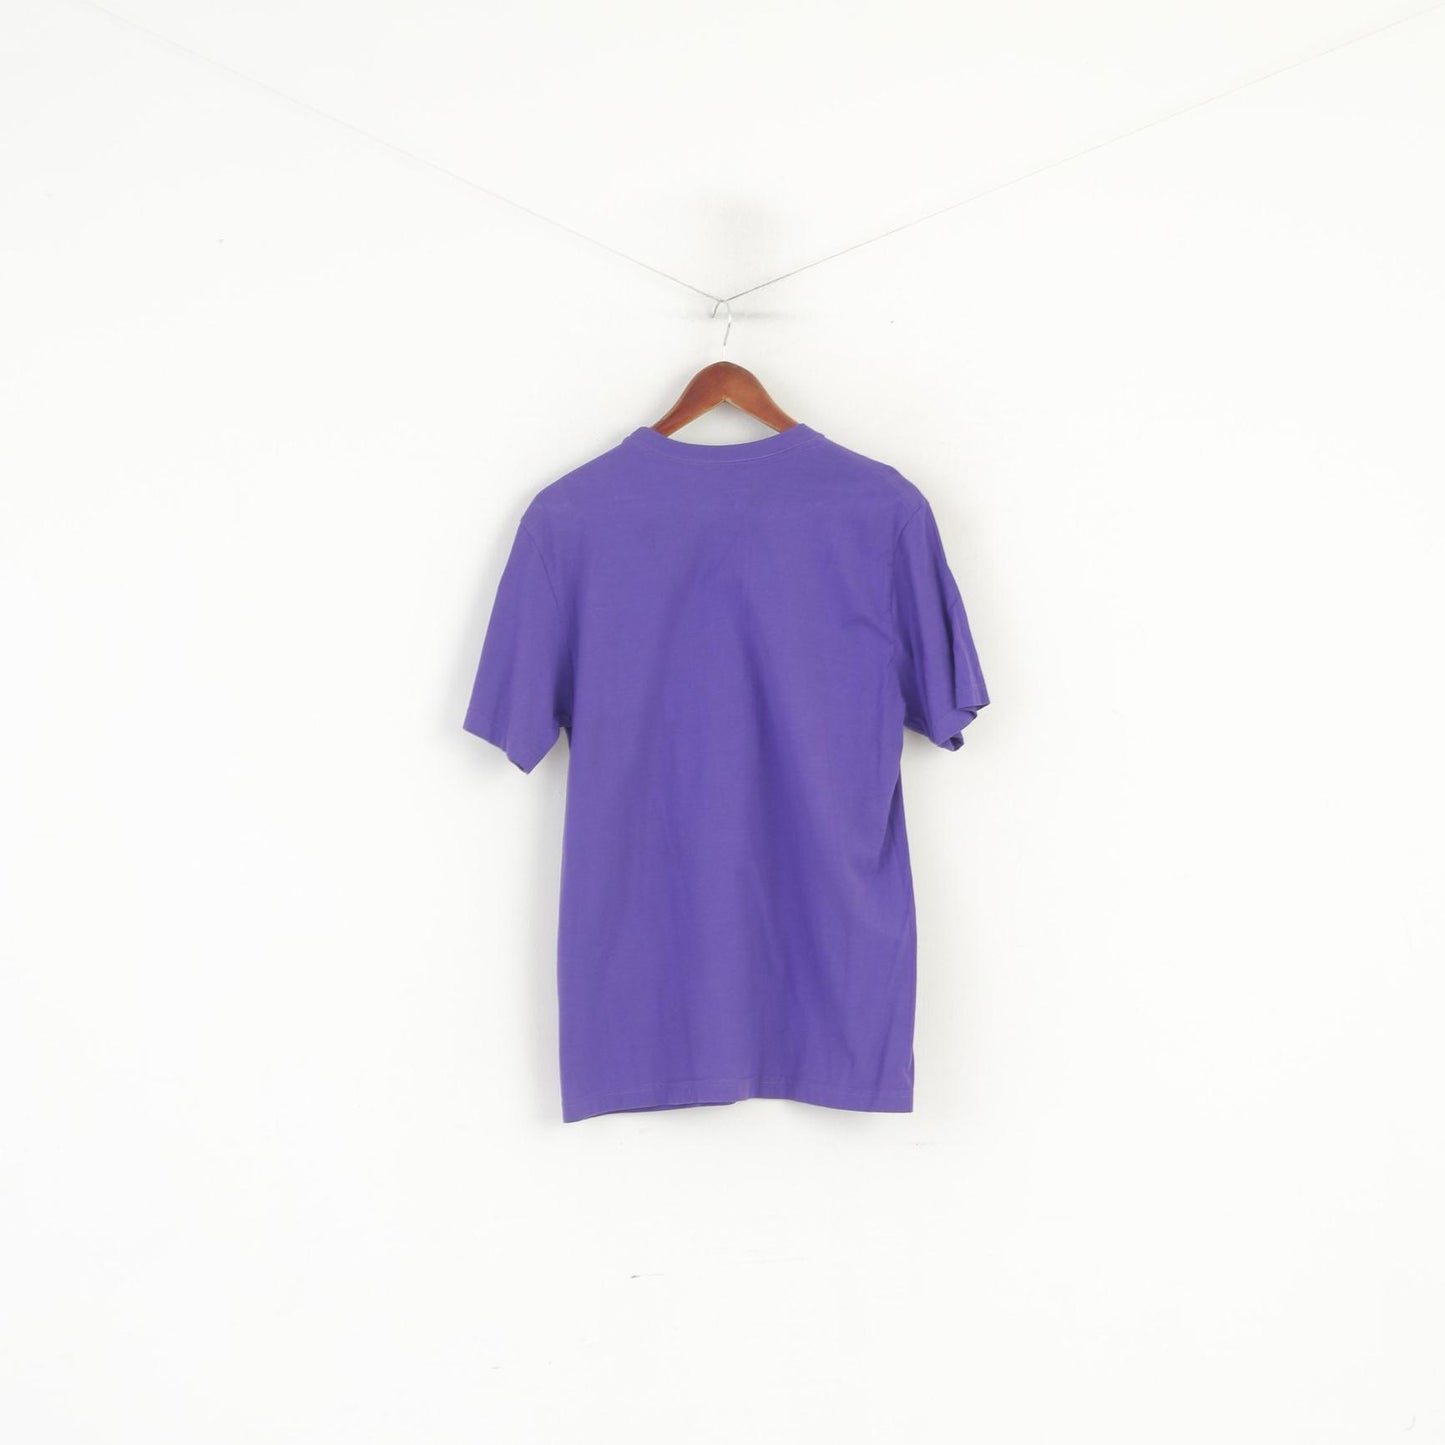 Maglietta Nike da uomo a maniche lunghe in cotone viola con grafica Just Do It, vestibilità standard